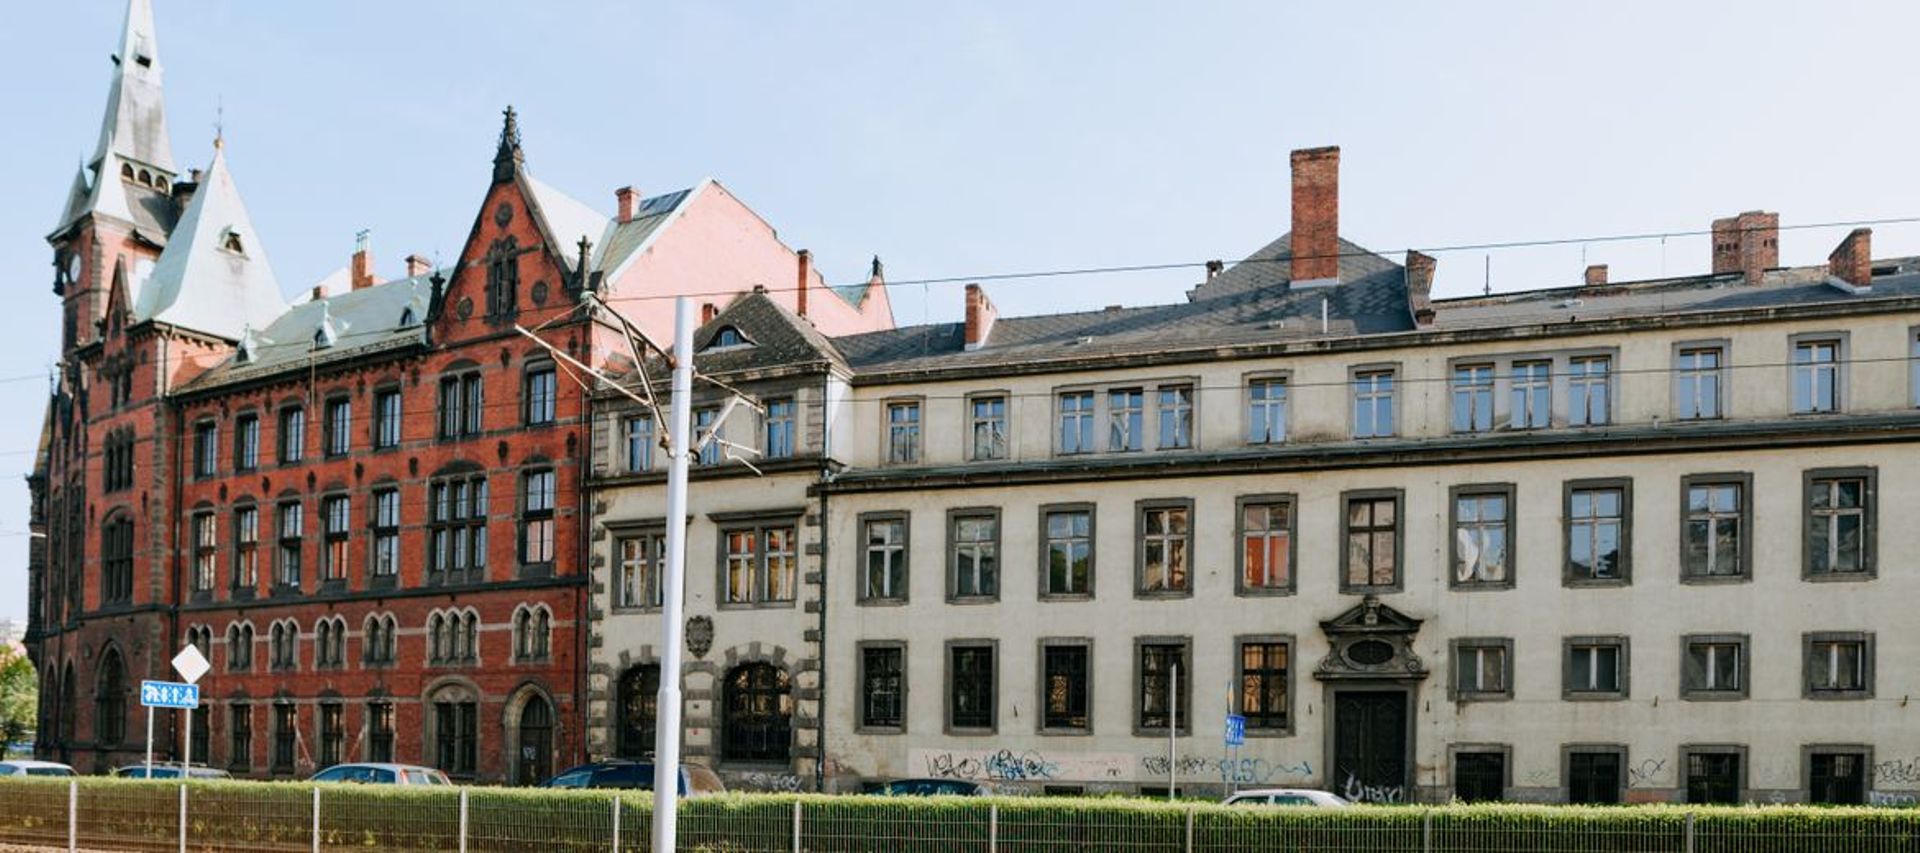 Uniwersytet Wrocławski znów próbuje sprzedać bibliotekę i pałac przy Rynku – tym razem osobno